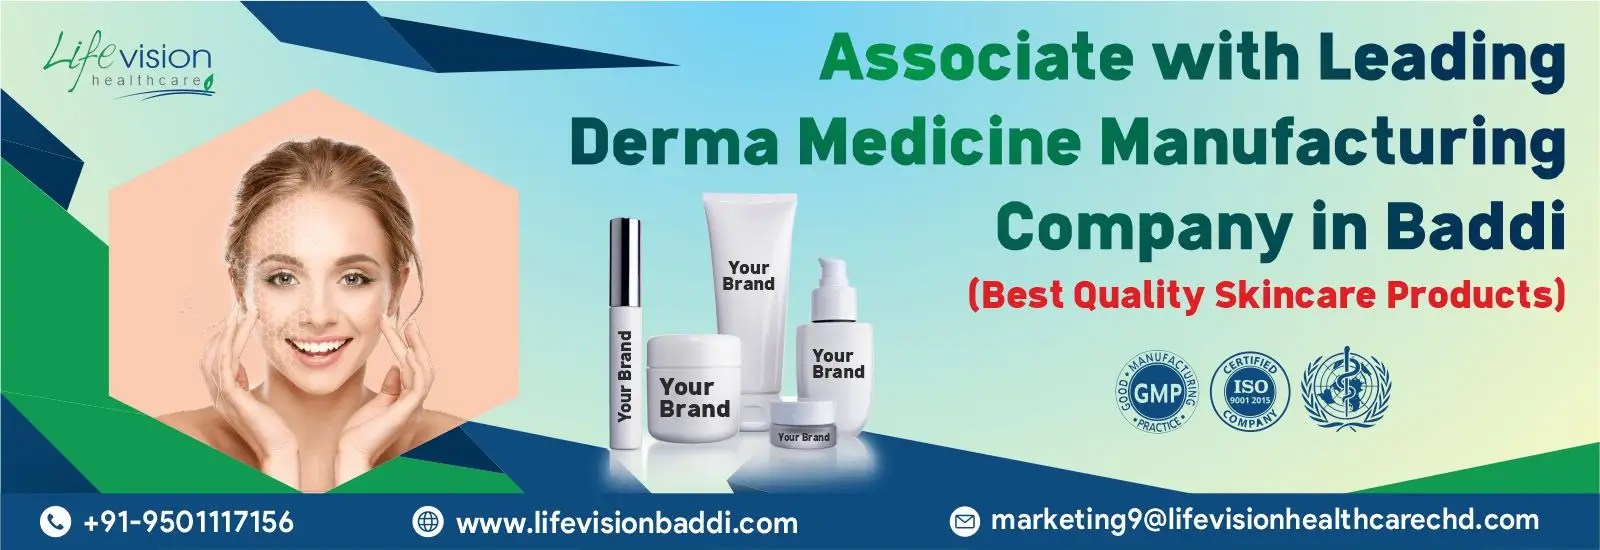 derma products manufacturer in Baddi